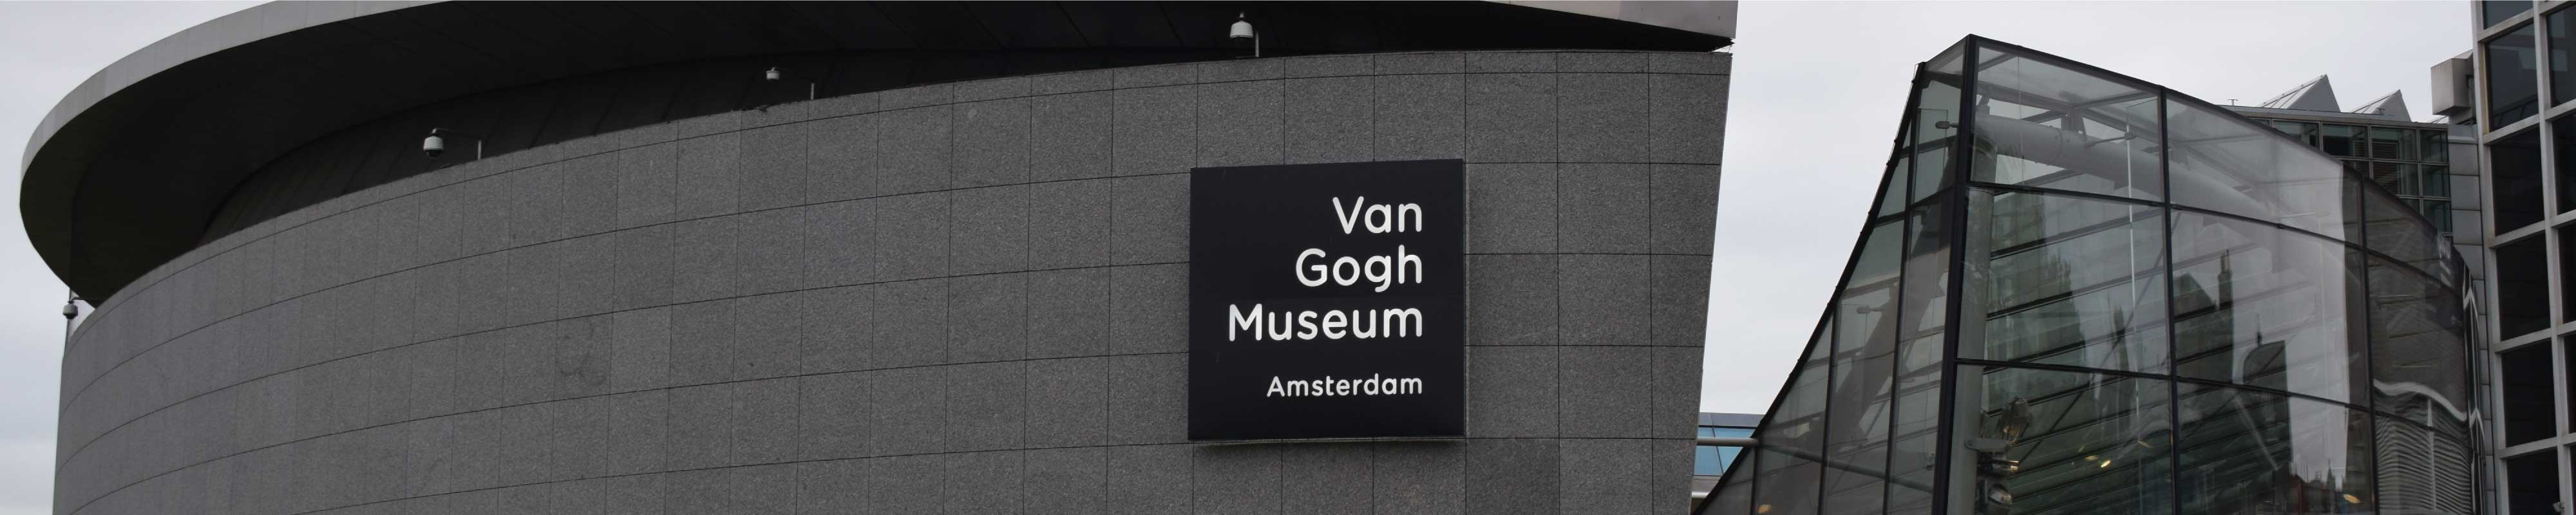 Consigna Equipaje | Museo Van Gogh en Amsterdam - Nannybag